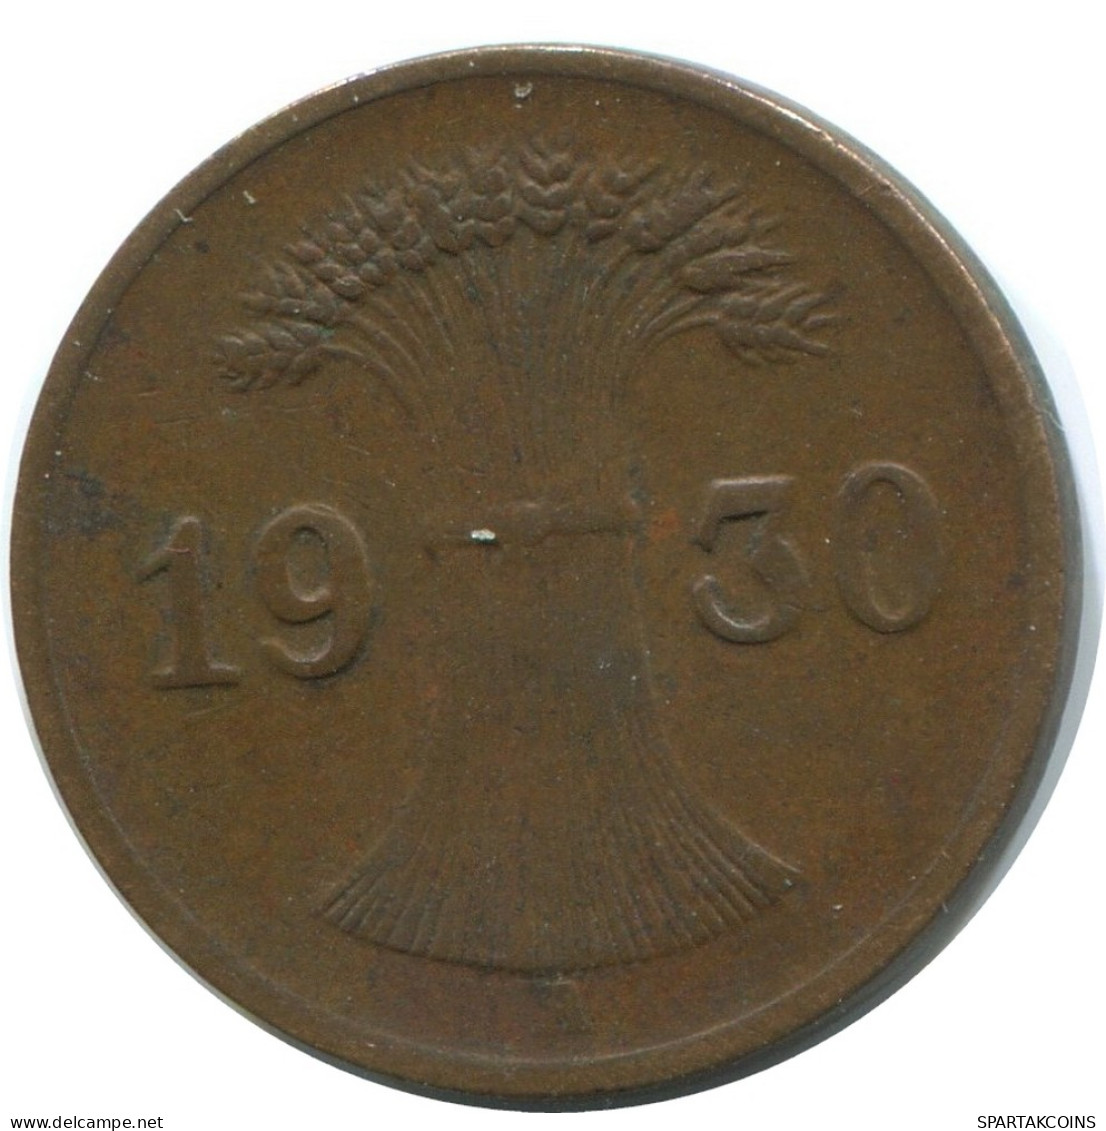 1 REICHSPFENNIG 1930 A GERMANY Coin #AD441.9.U - 1 Rentenpfennig & 1 Reichspfennig